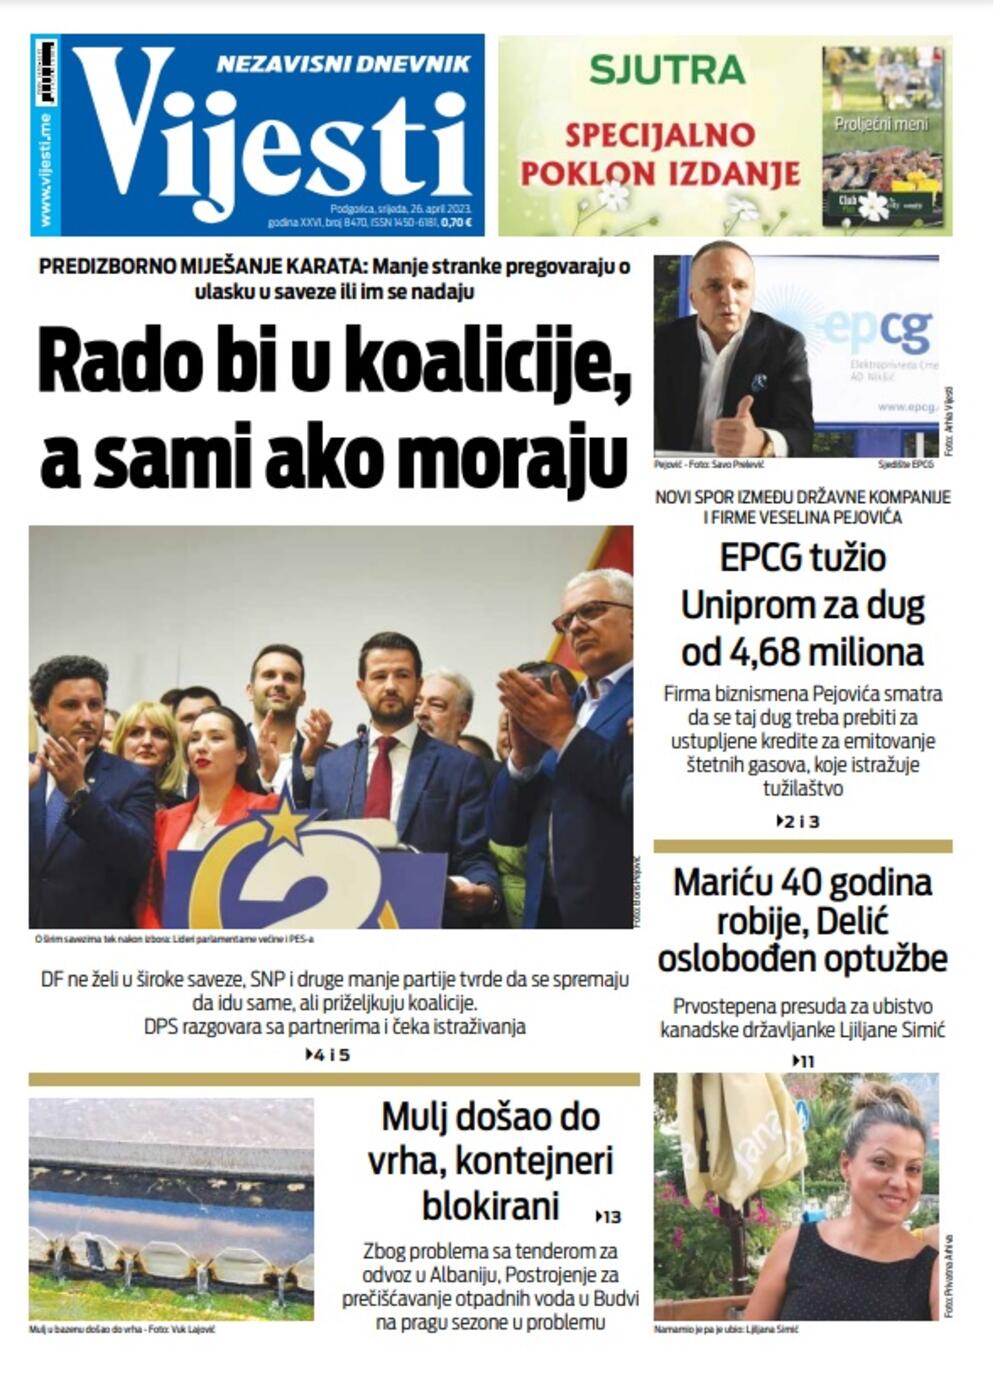 Naslovna strana "Vijesti" za 26. april 2023. godine, Foto: Vijesti